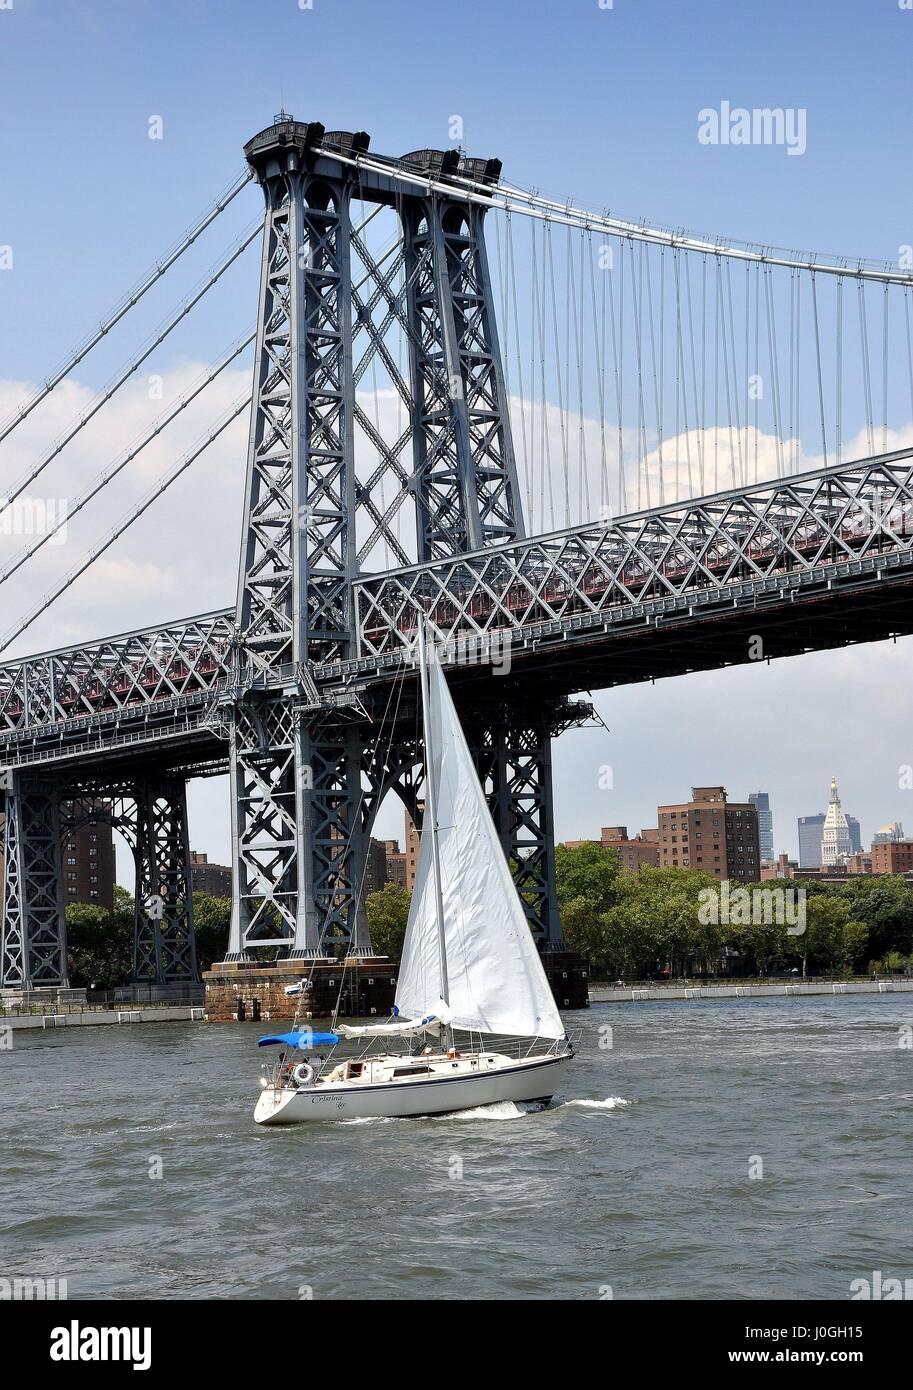 New York City - 4 août 2011 : Voilier & le Williamsburg Bridge sur l'East River qui relie l'île de Manhattan au Borough de Brooklyn Banque D'Images